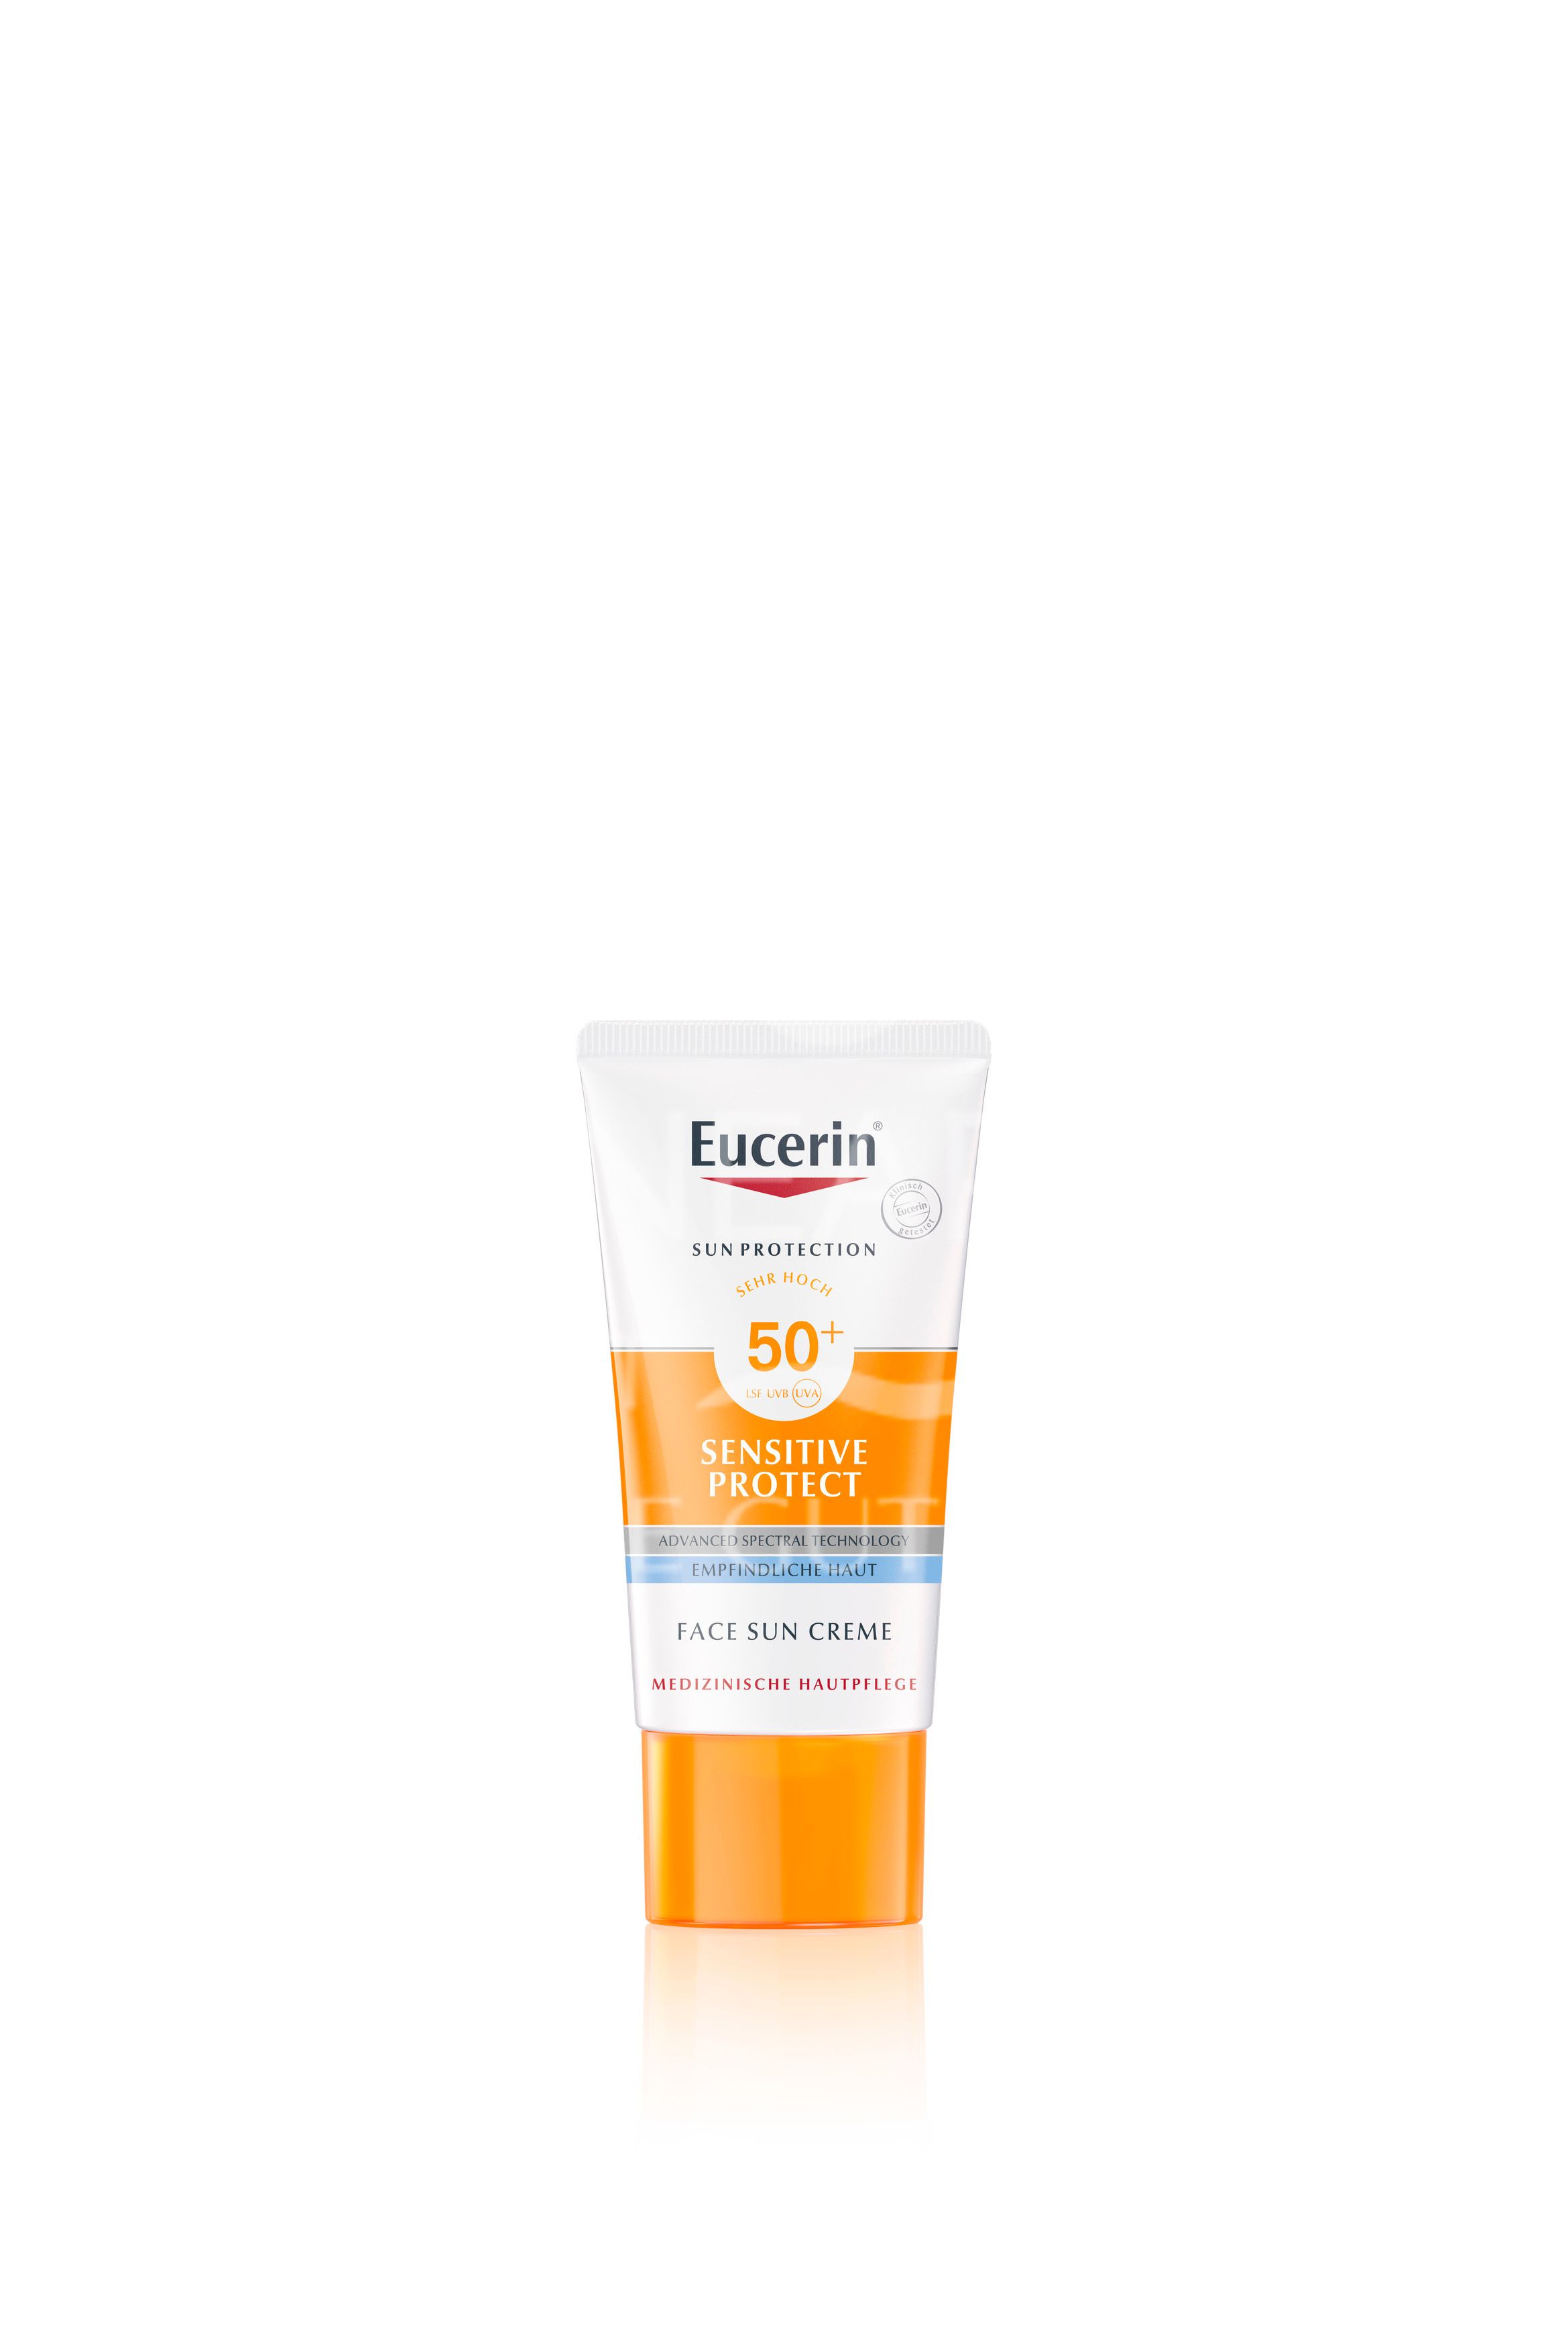 Eucerin® Sensitive Protect Empfindliche Haut Face Sun Creme LSF 50+